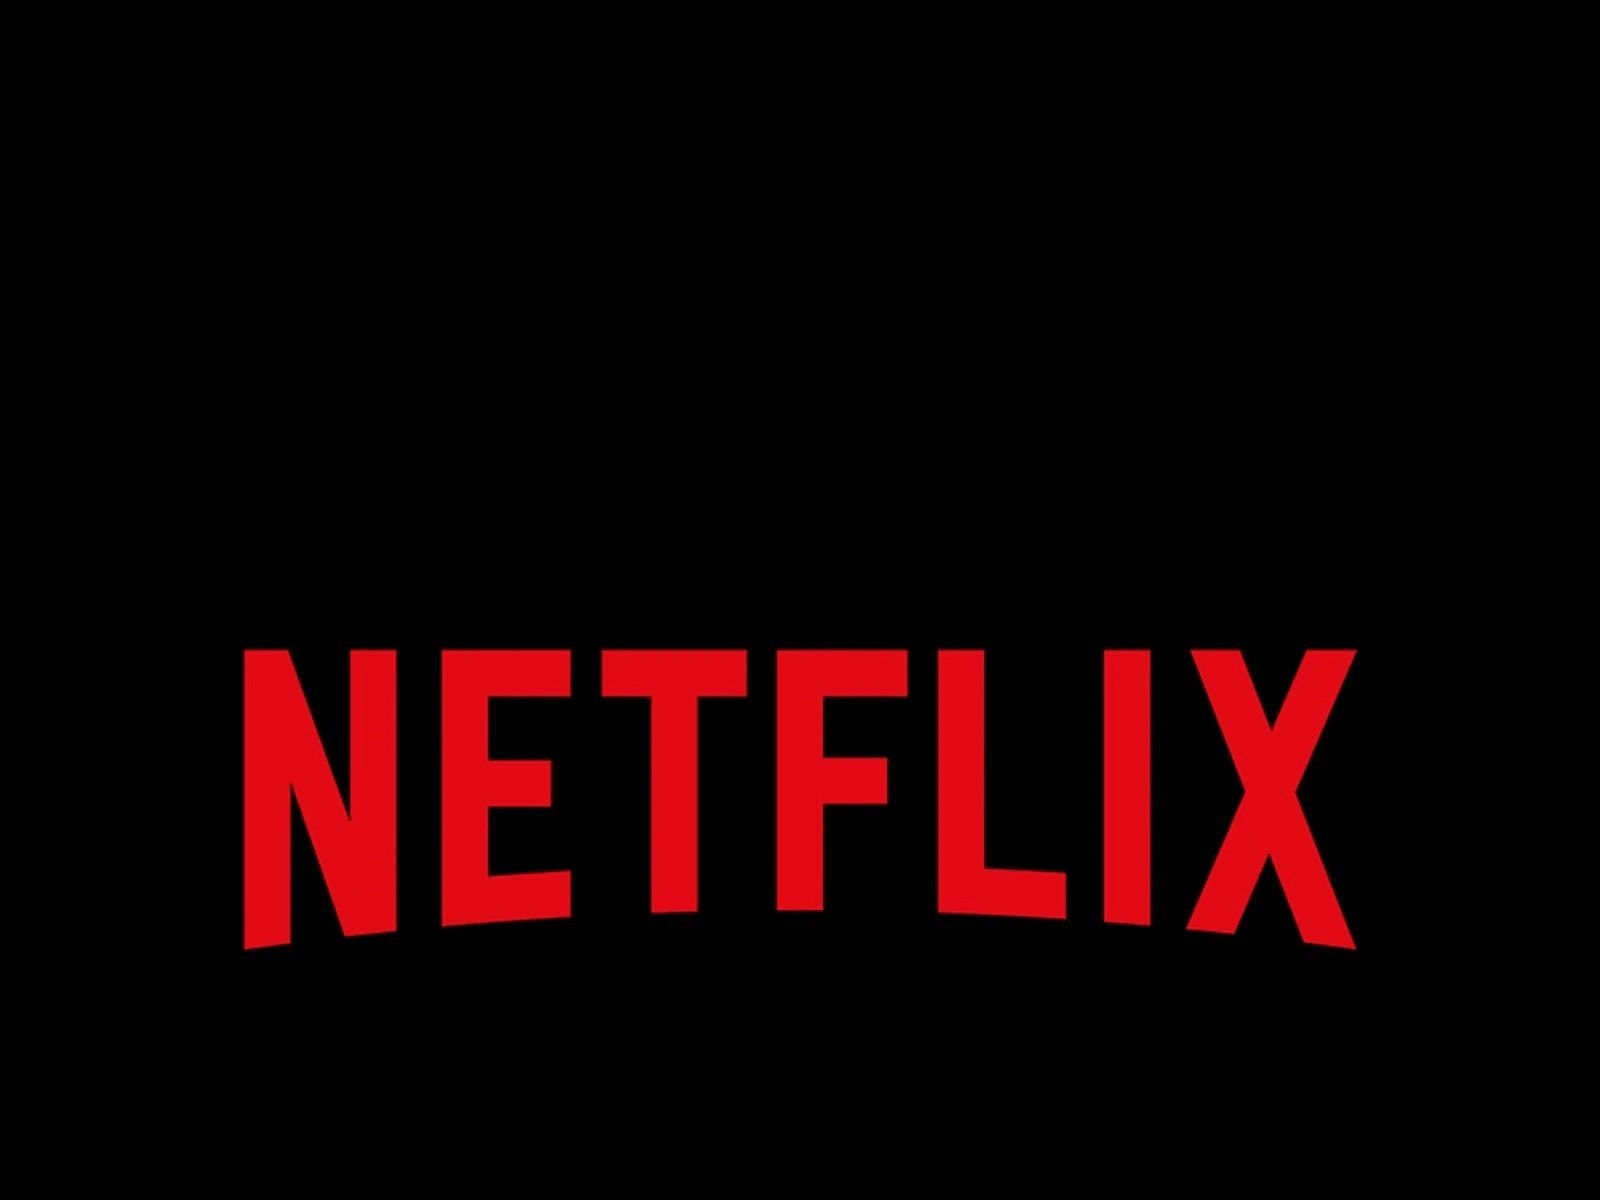 ਘਾਟੇ ਤੋਂ ਬਚਣ ਲਈ Netflix ਨੇ ਅਨੁਸ਼ਕਾ ਦੀ ਕੰਪਨੀ ਨਾਲ ਮਿਲਾਇਆ ਹੱਥ